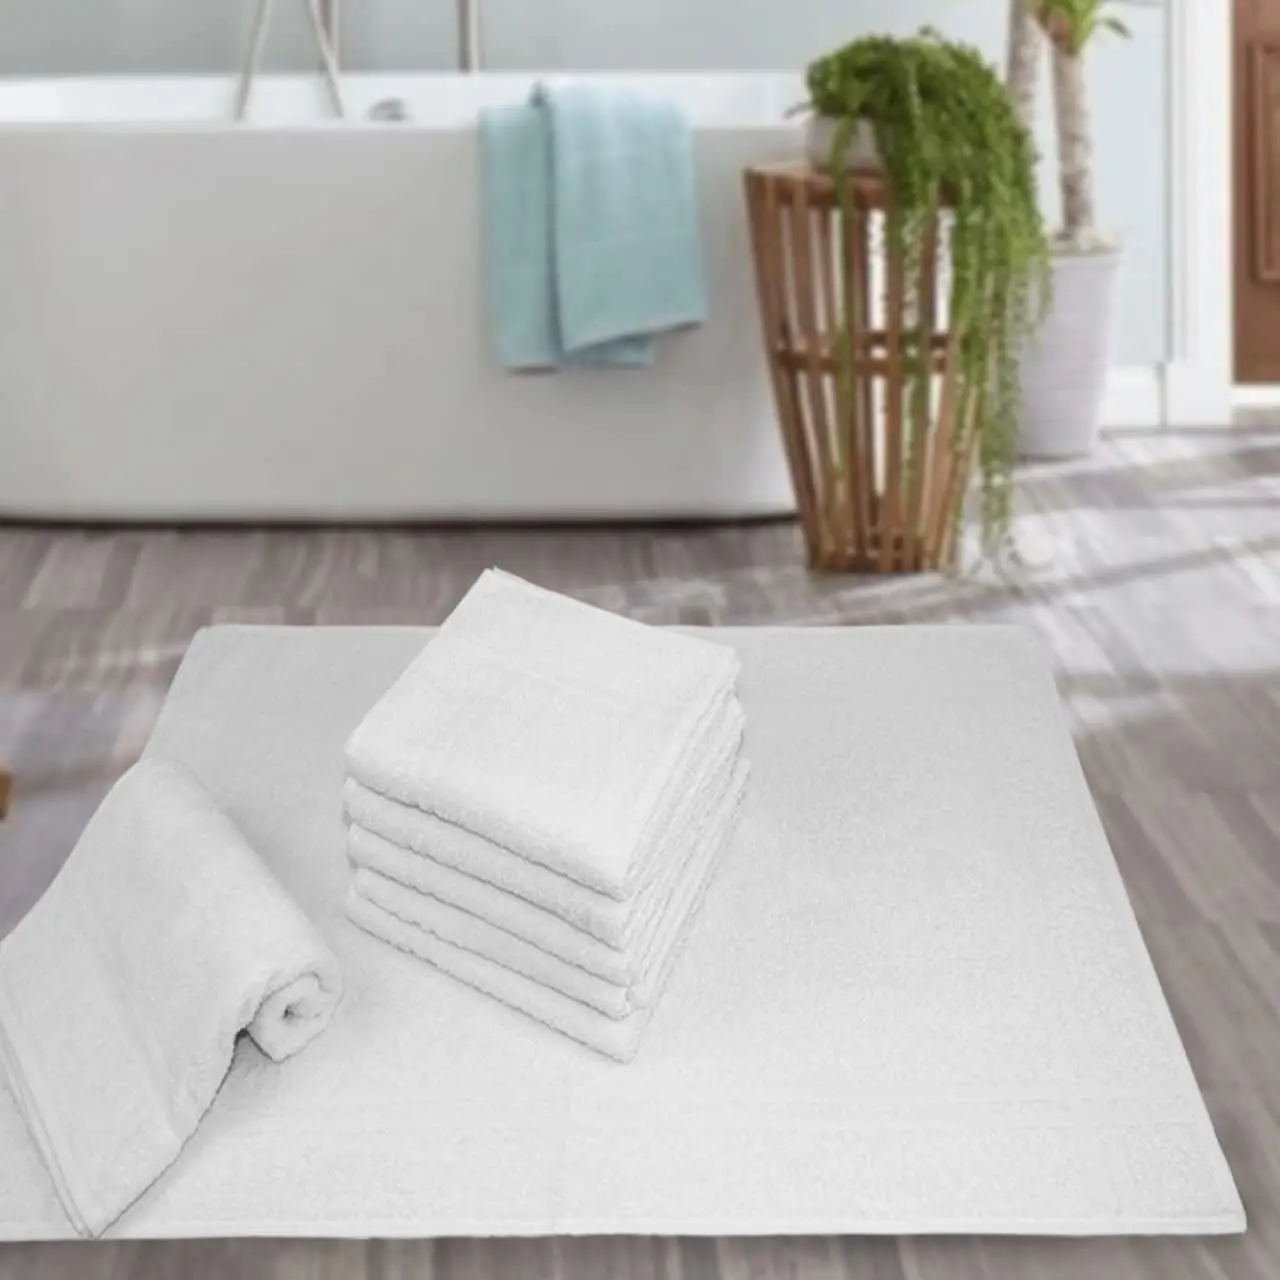 

Com 5 Toalhas de Piso para Hotel Alta Absorção 44x70cm - Profissional Prata - Toalhas (Branco) car wash clean detailing towel